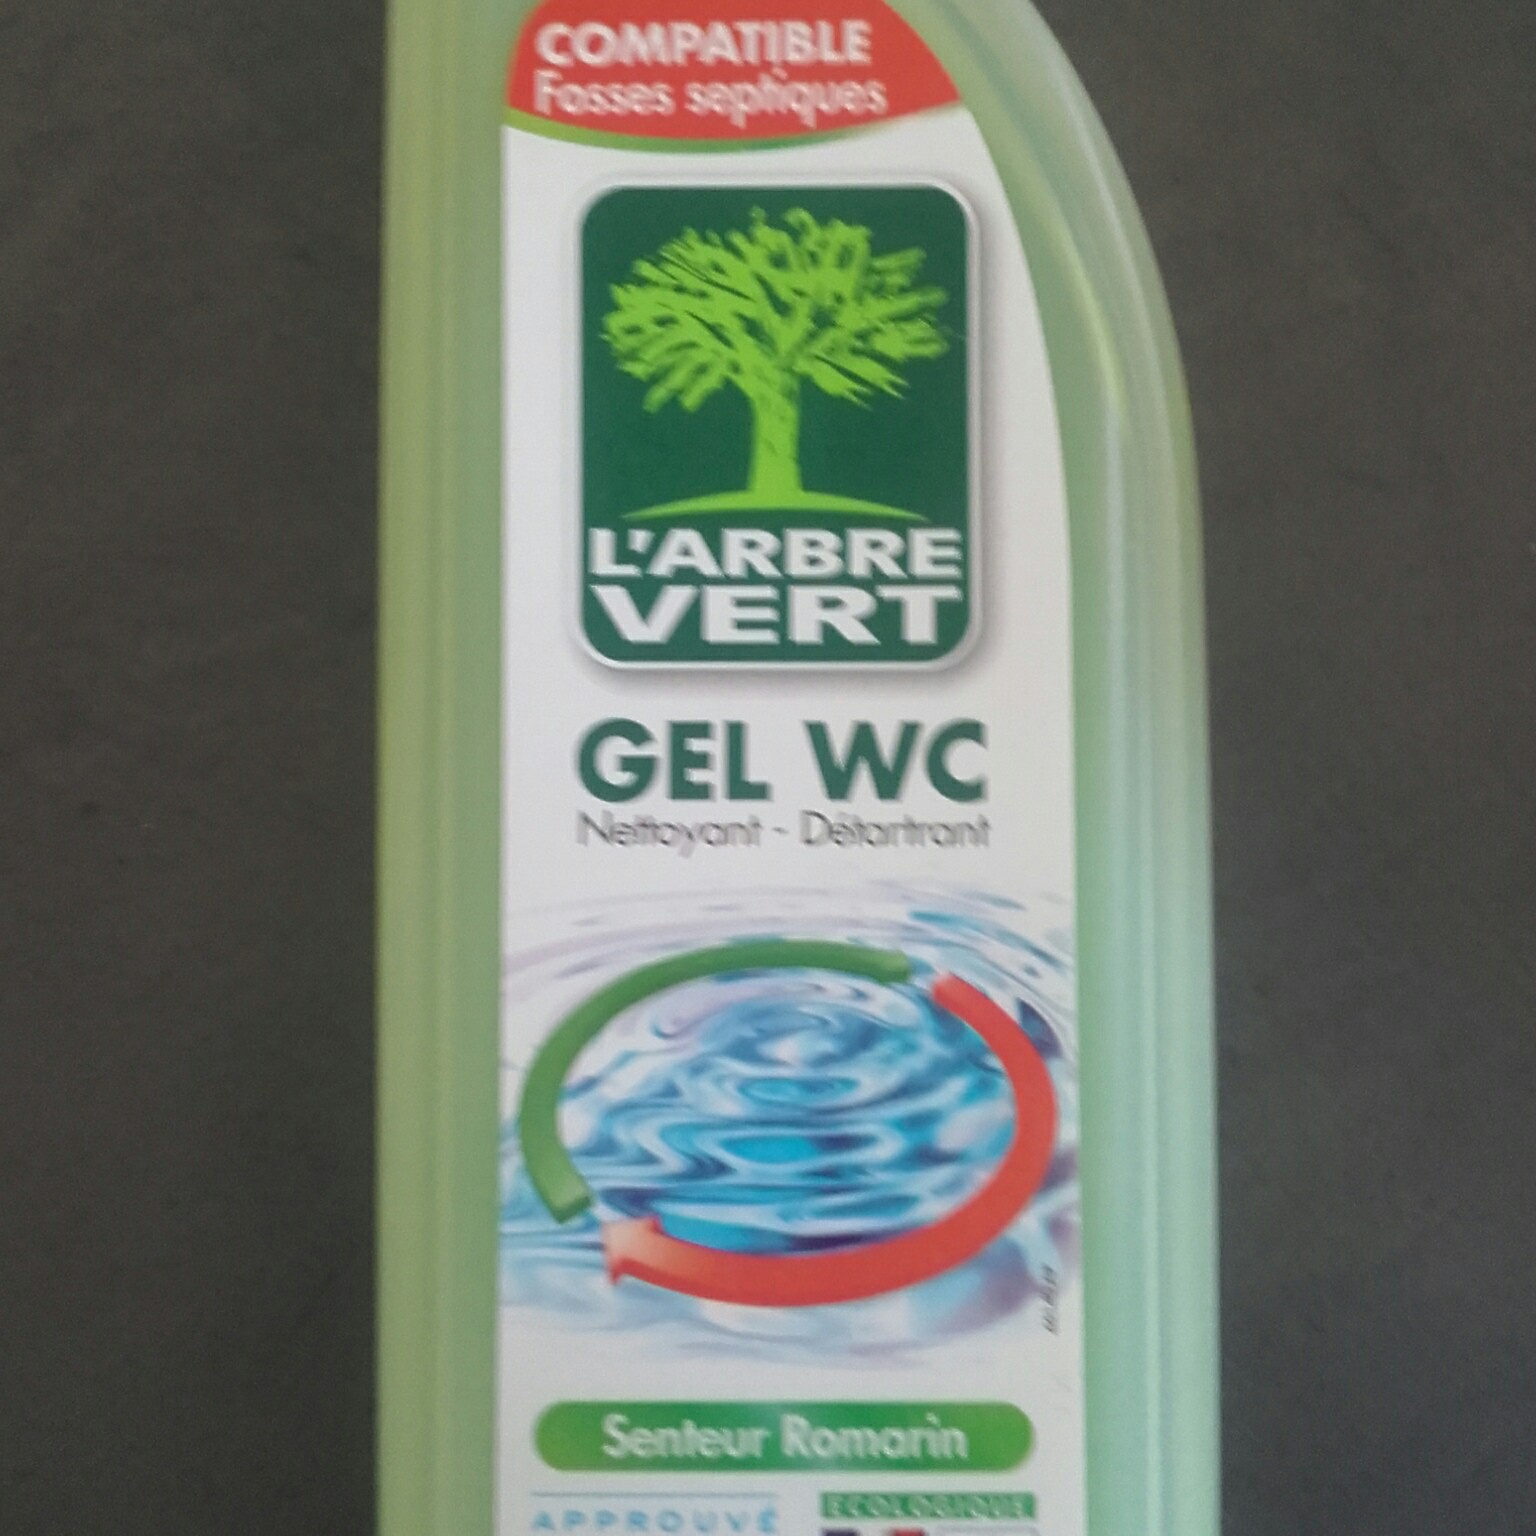 l'arbre vert gel wc - Product - fr